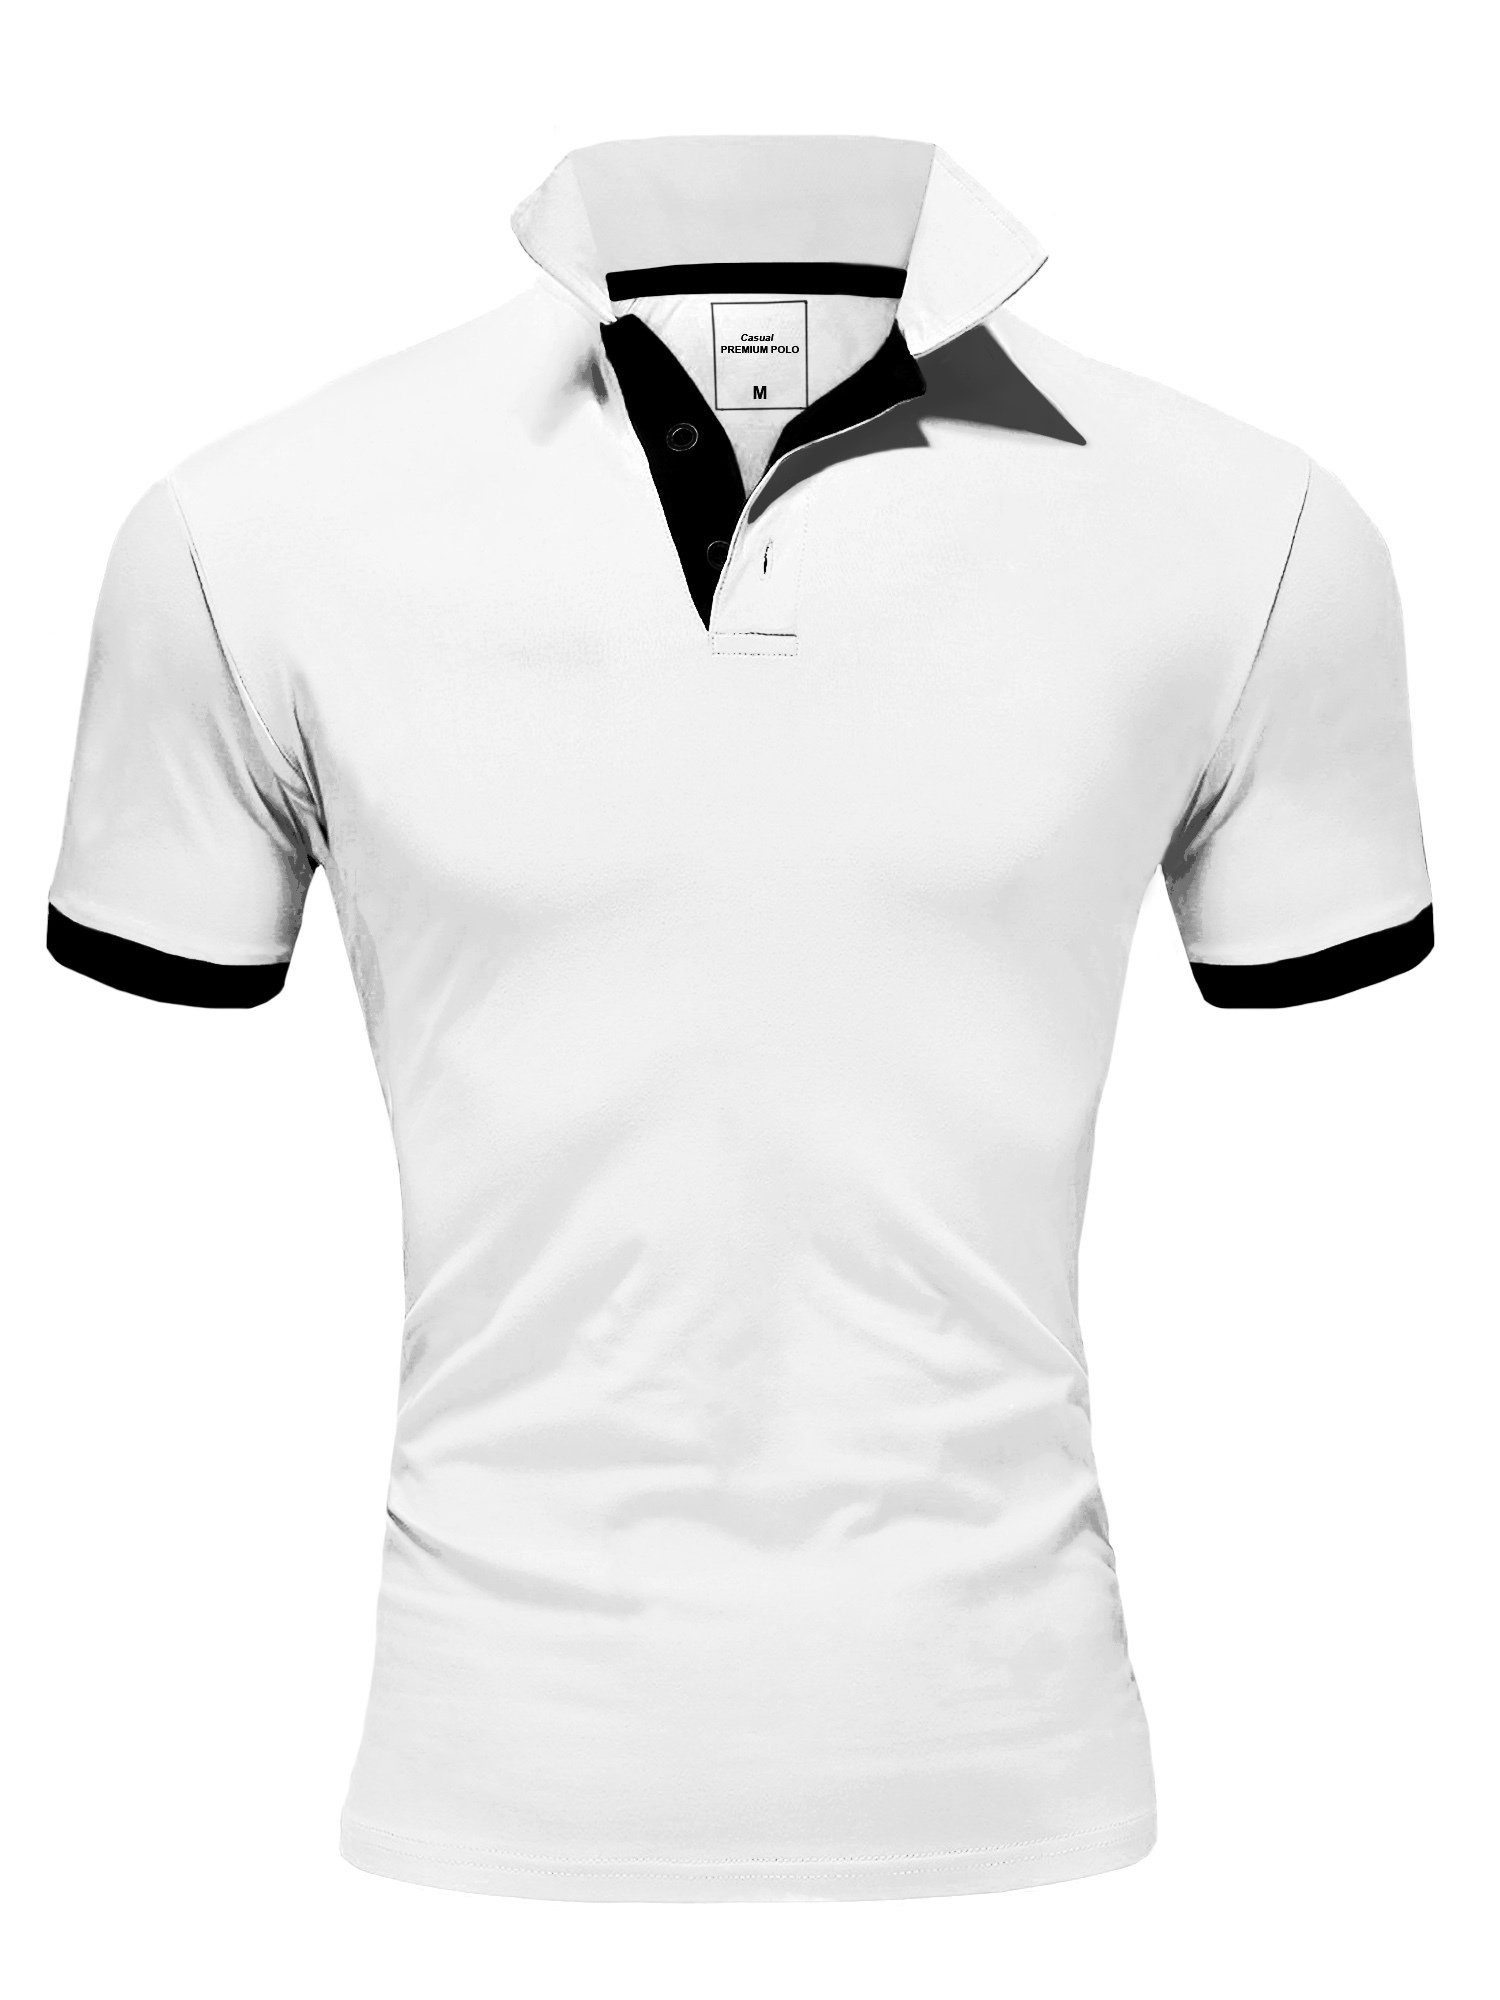 REPUBLIX Poloshirt RONALD Herren Shirt mit kontrastierenden Akzenten, in Piqué Qualität Weiß/Schwarz